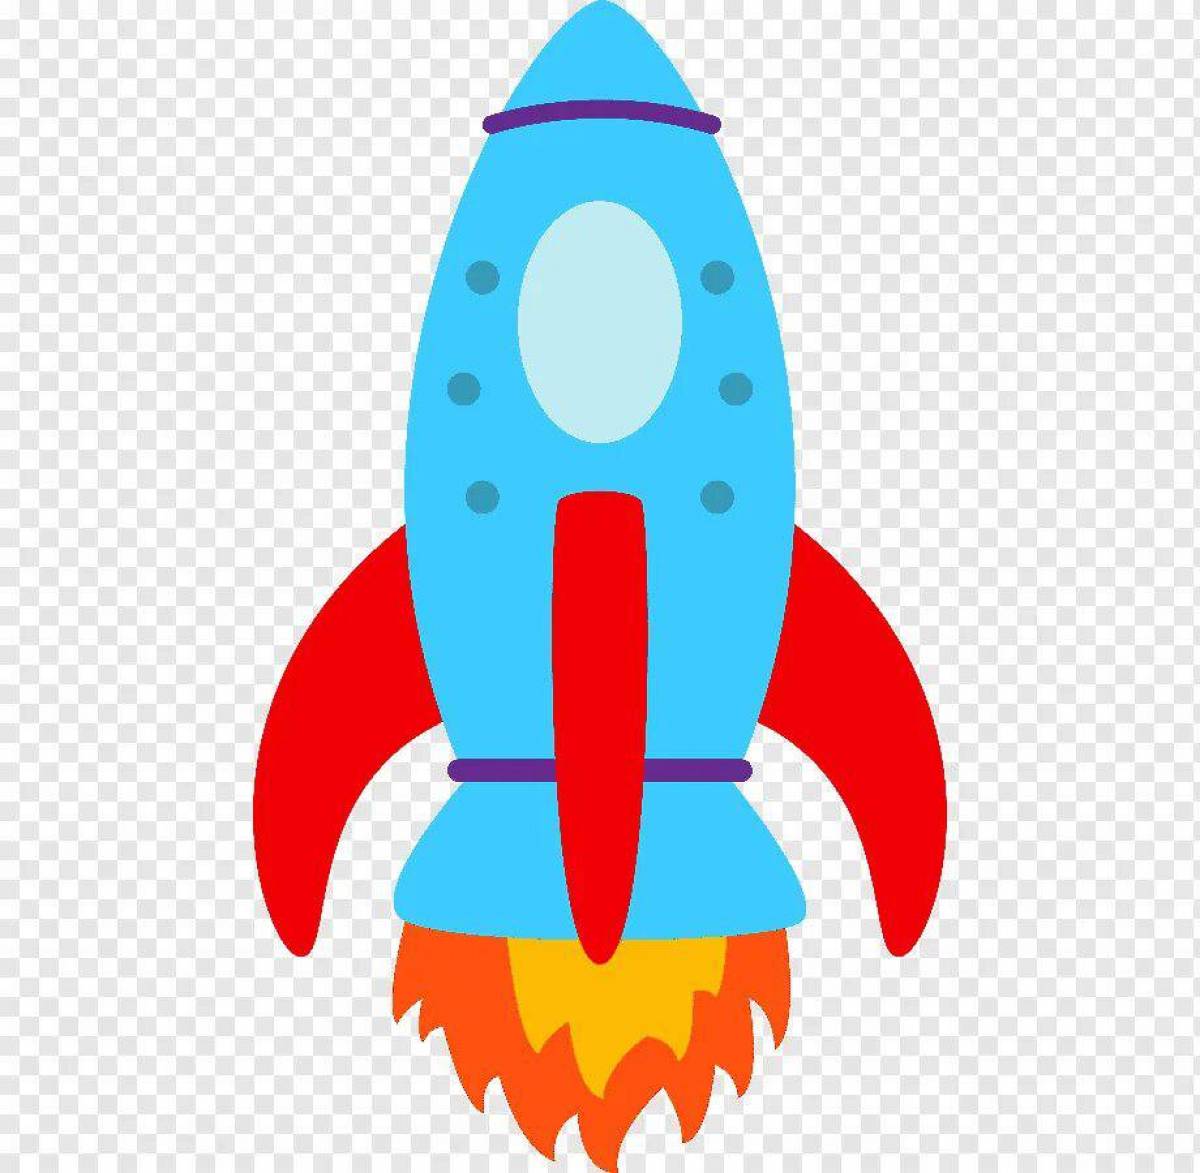 Цветная ракета. Ракета для детей. Изображение ракеты для детей. Цветная ракета для детей. Космическая ракета для детей.